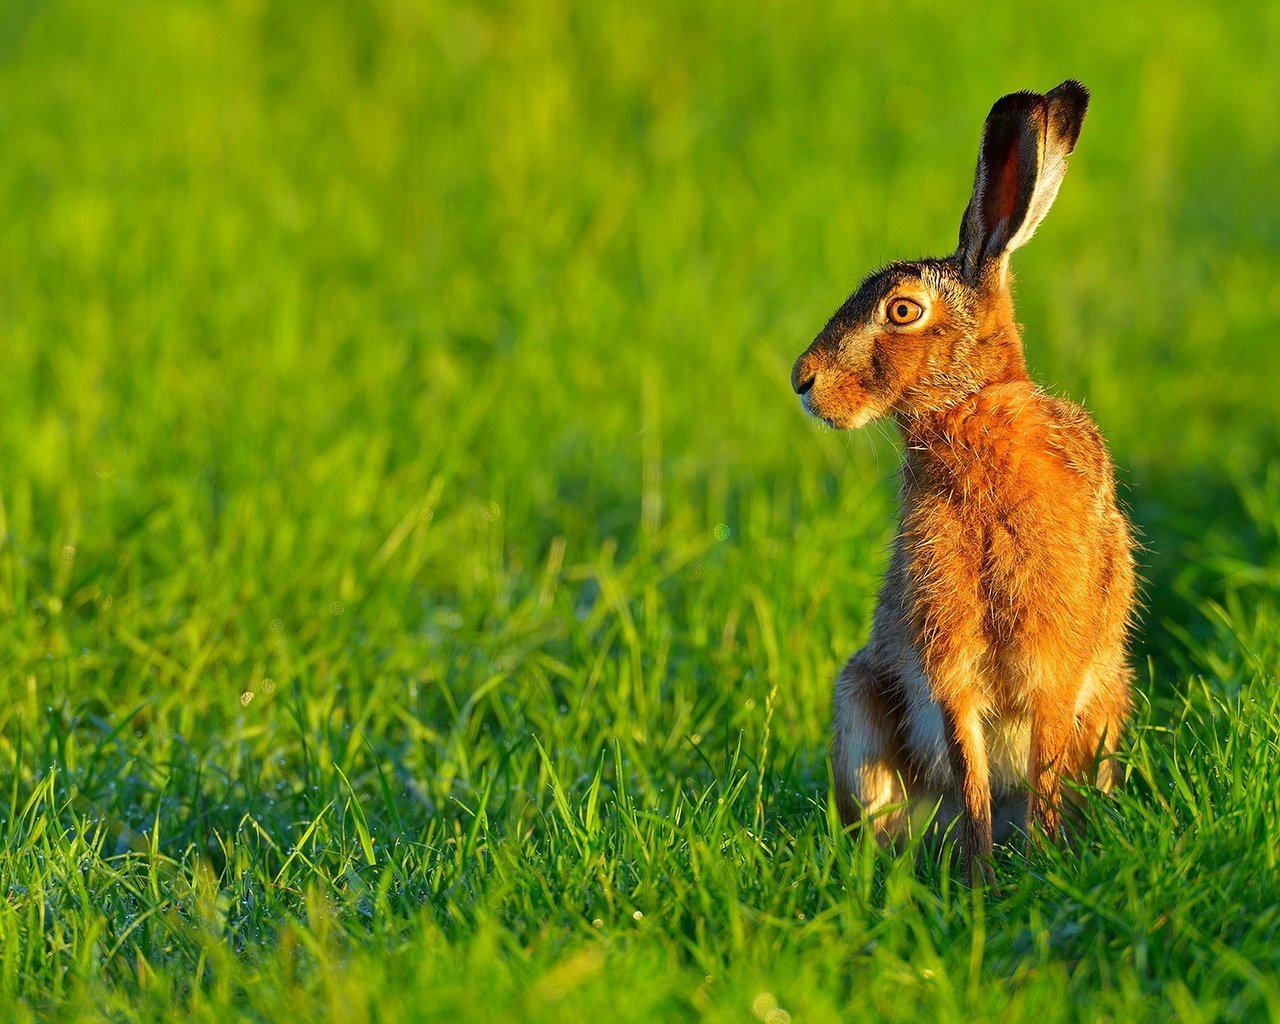 Заяц в траве. Казах-Очы животное заяц. Мире животных зайцы